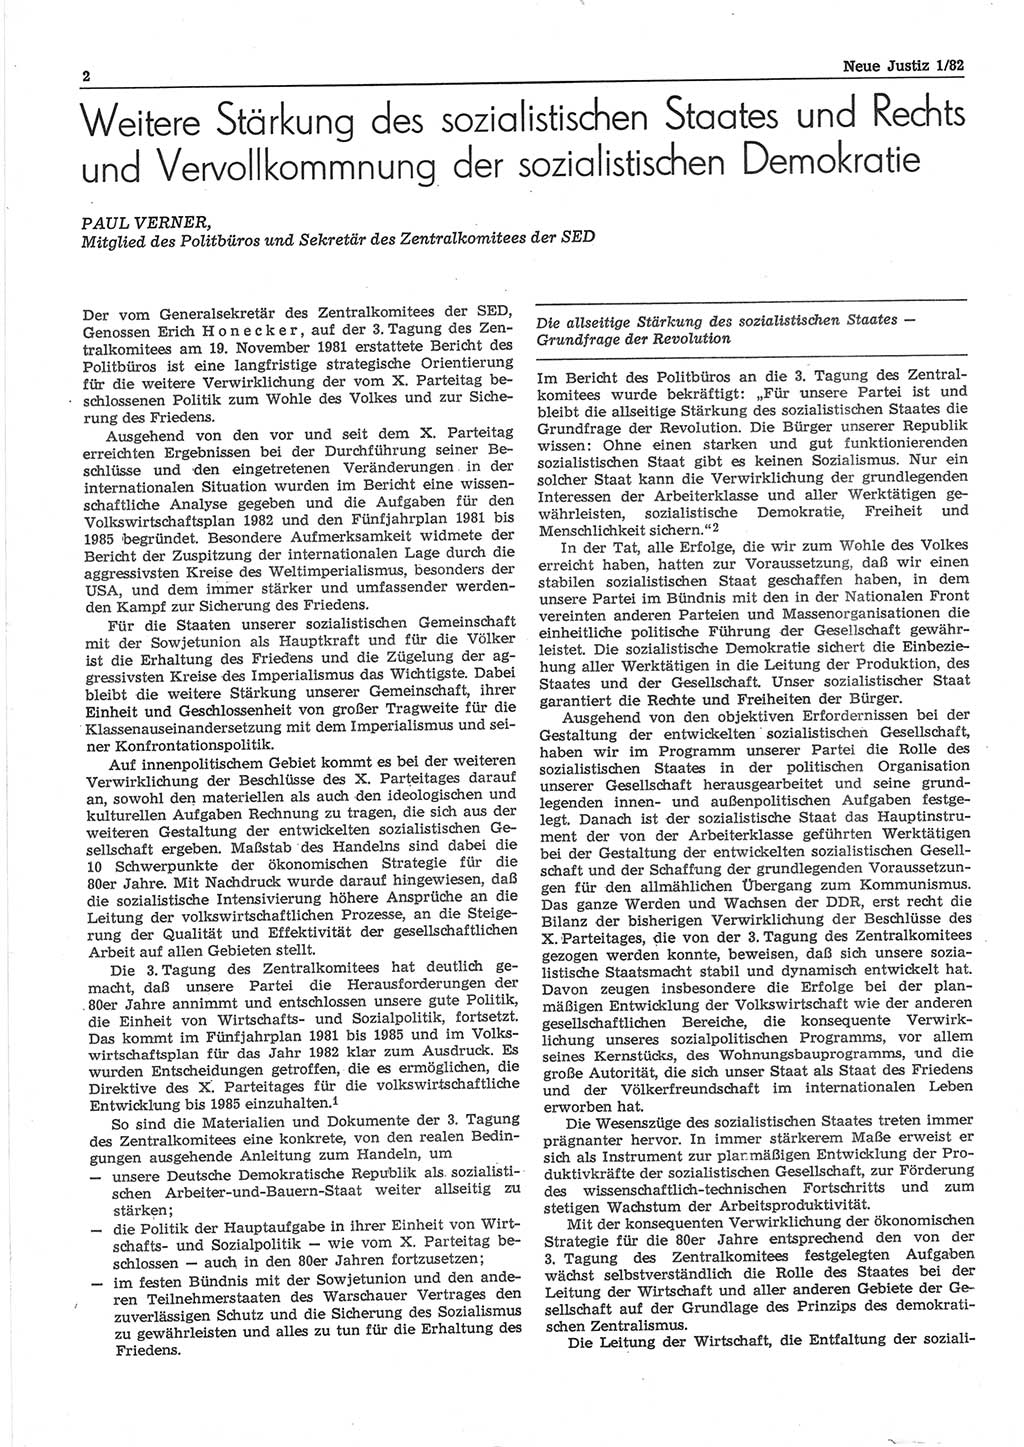 Neue Justiz (NJ), Zeitschrift für sozialistisches Recht und Gesetzlichkeit [Deutsche Demokratische Republik (DDR)], 36. Jahrgang 1982, Seite 2 (NJ DDR 1982, S. 2)